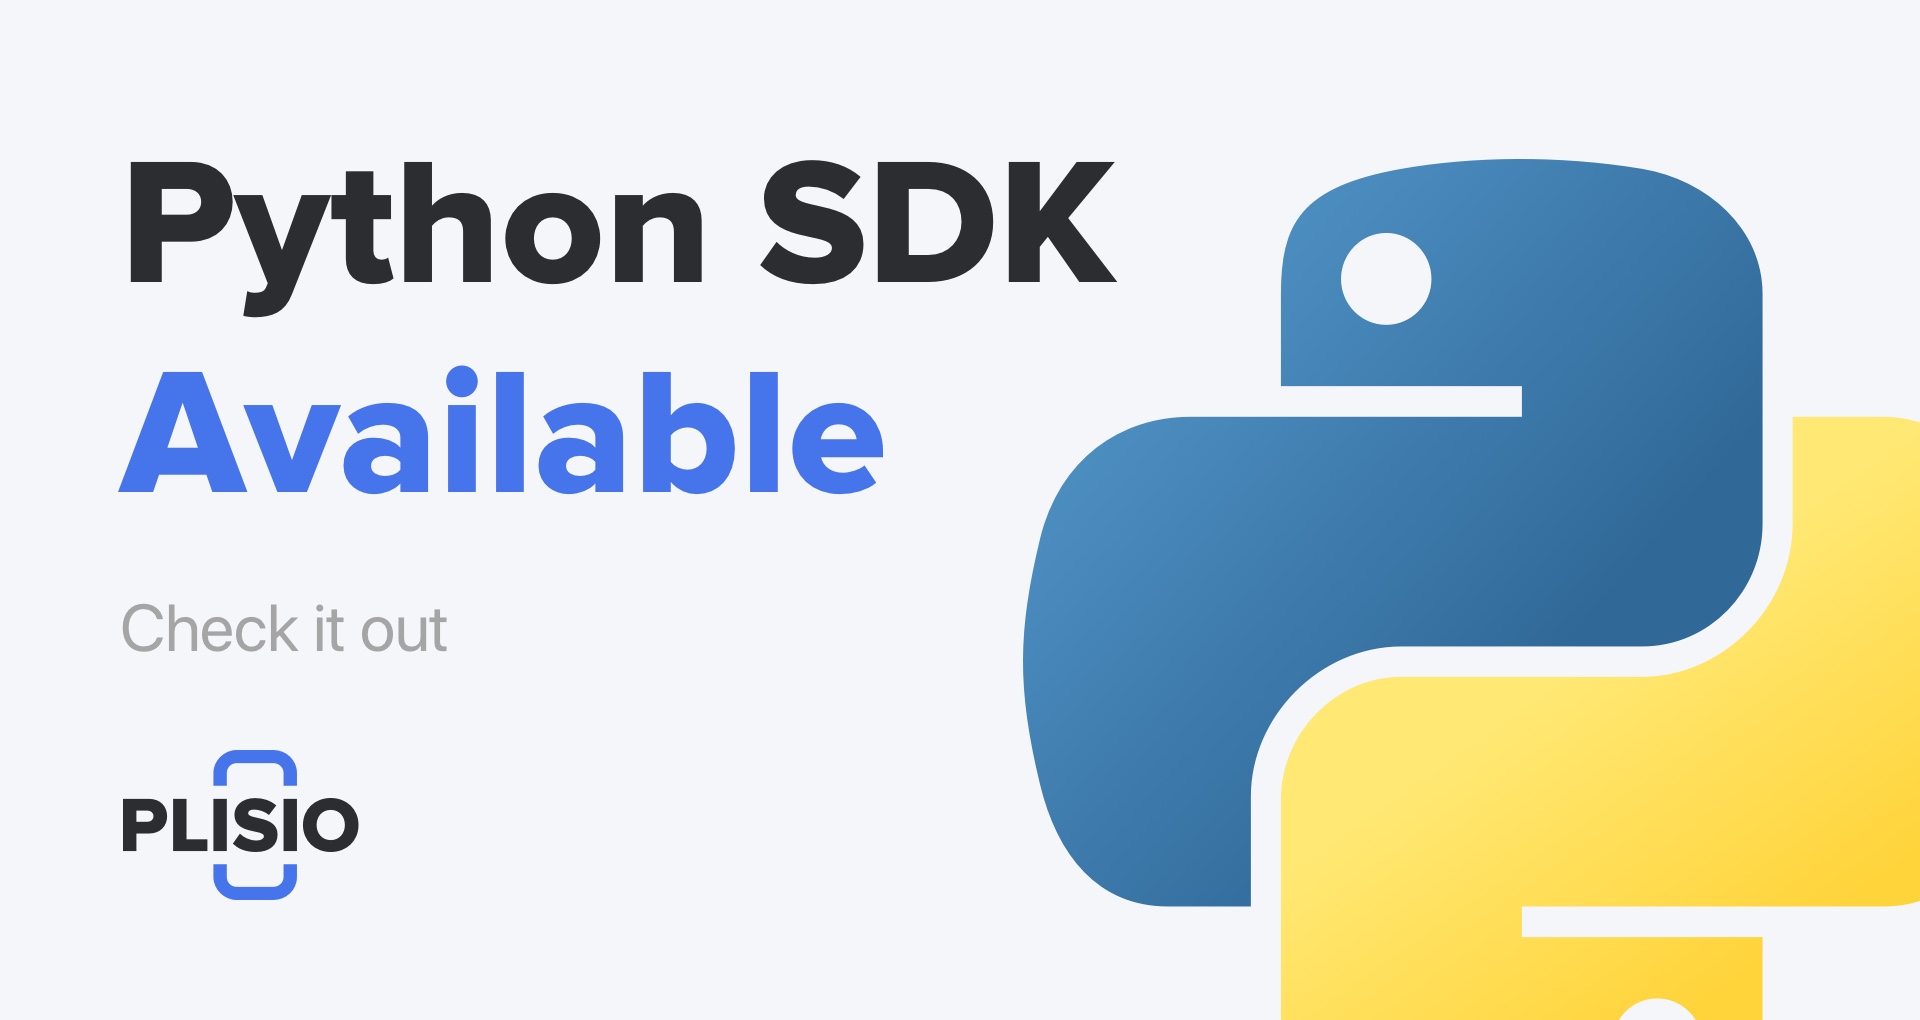 Python SDK теперь доступен. Проверьте это!